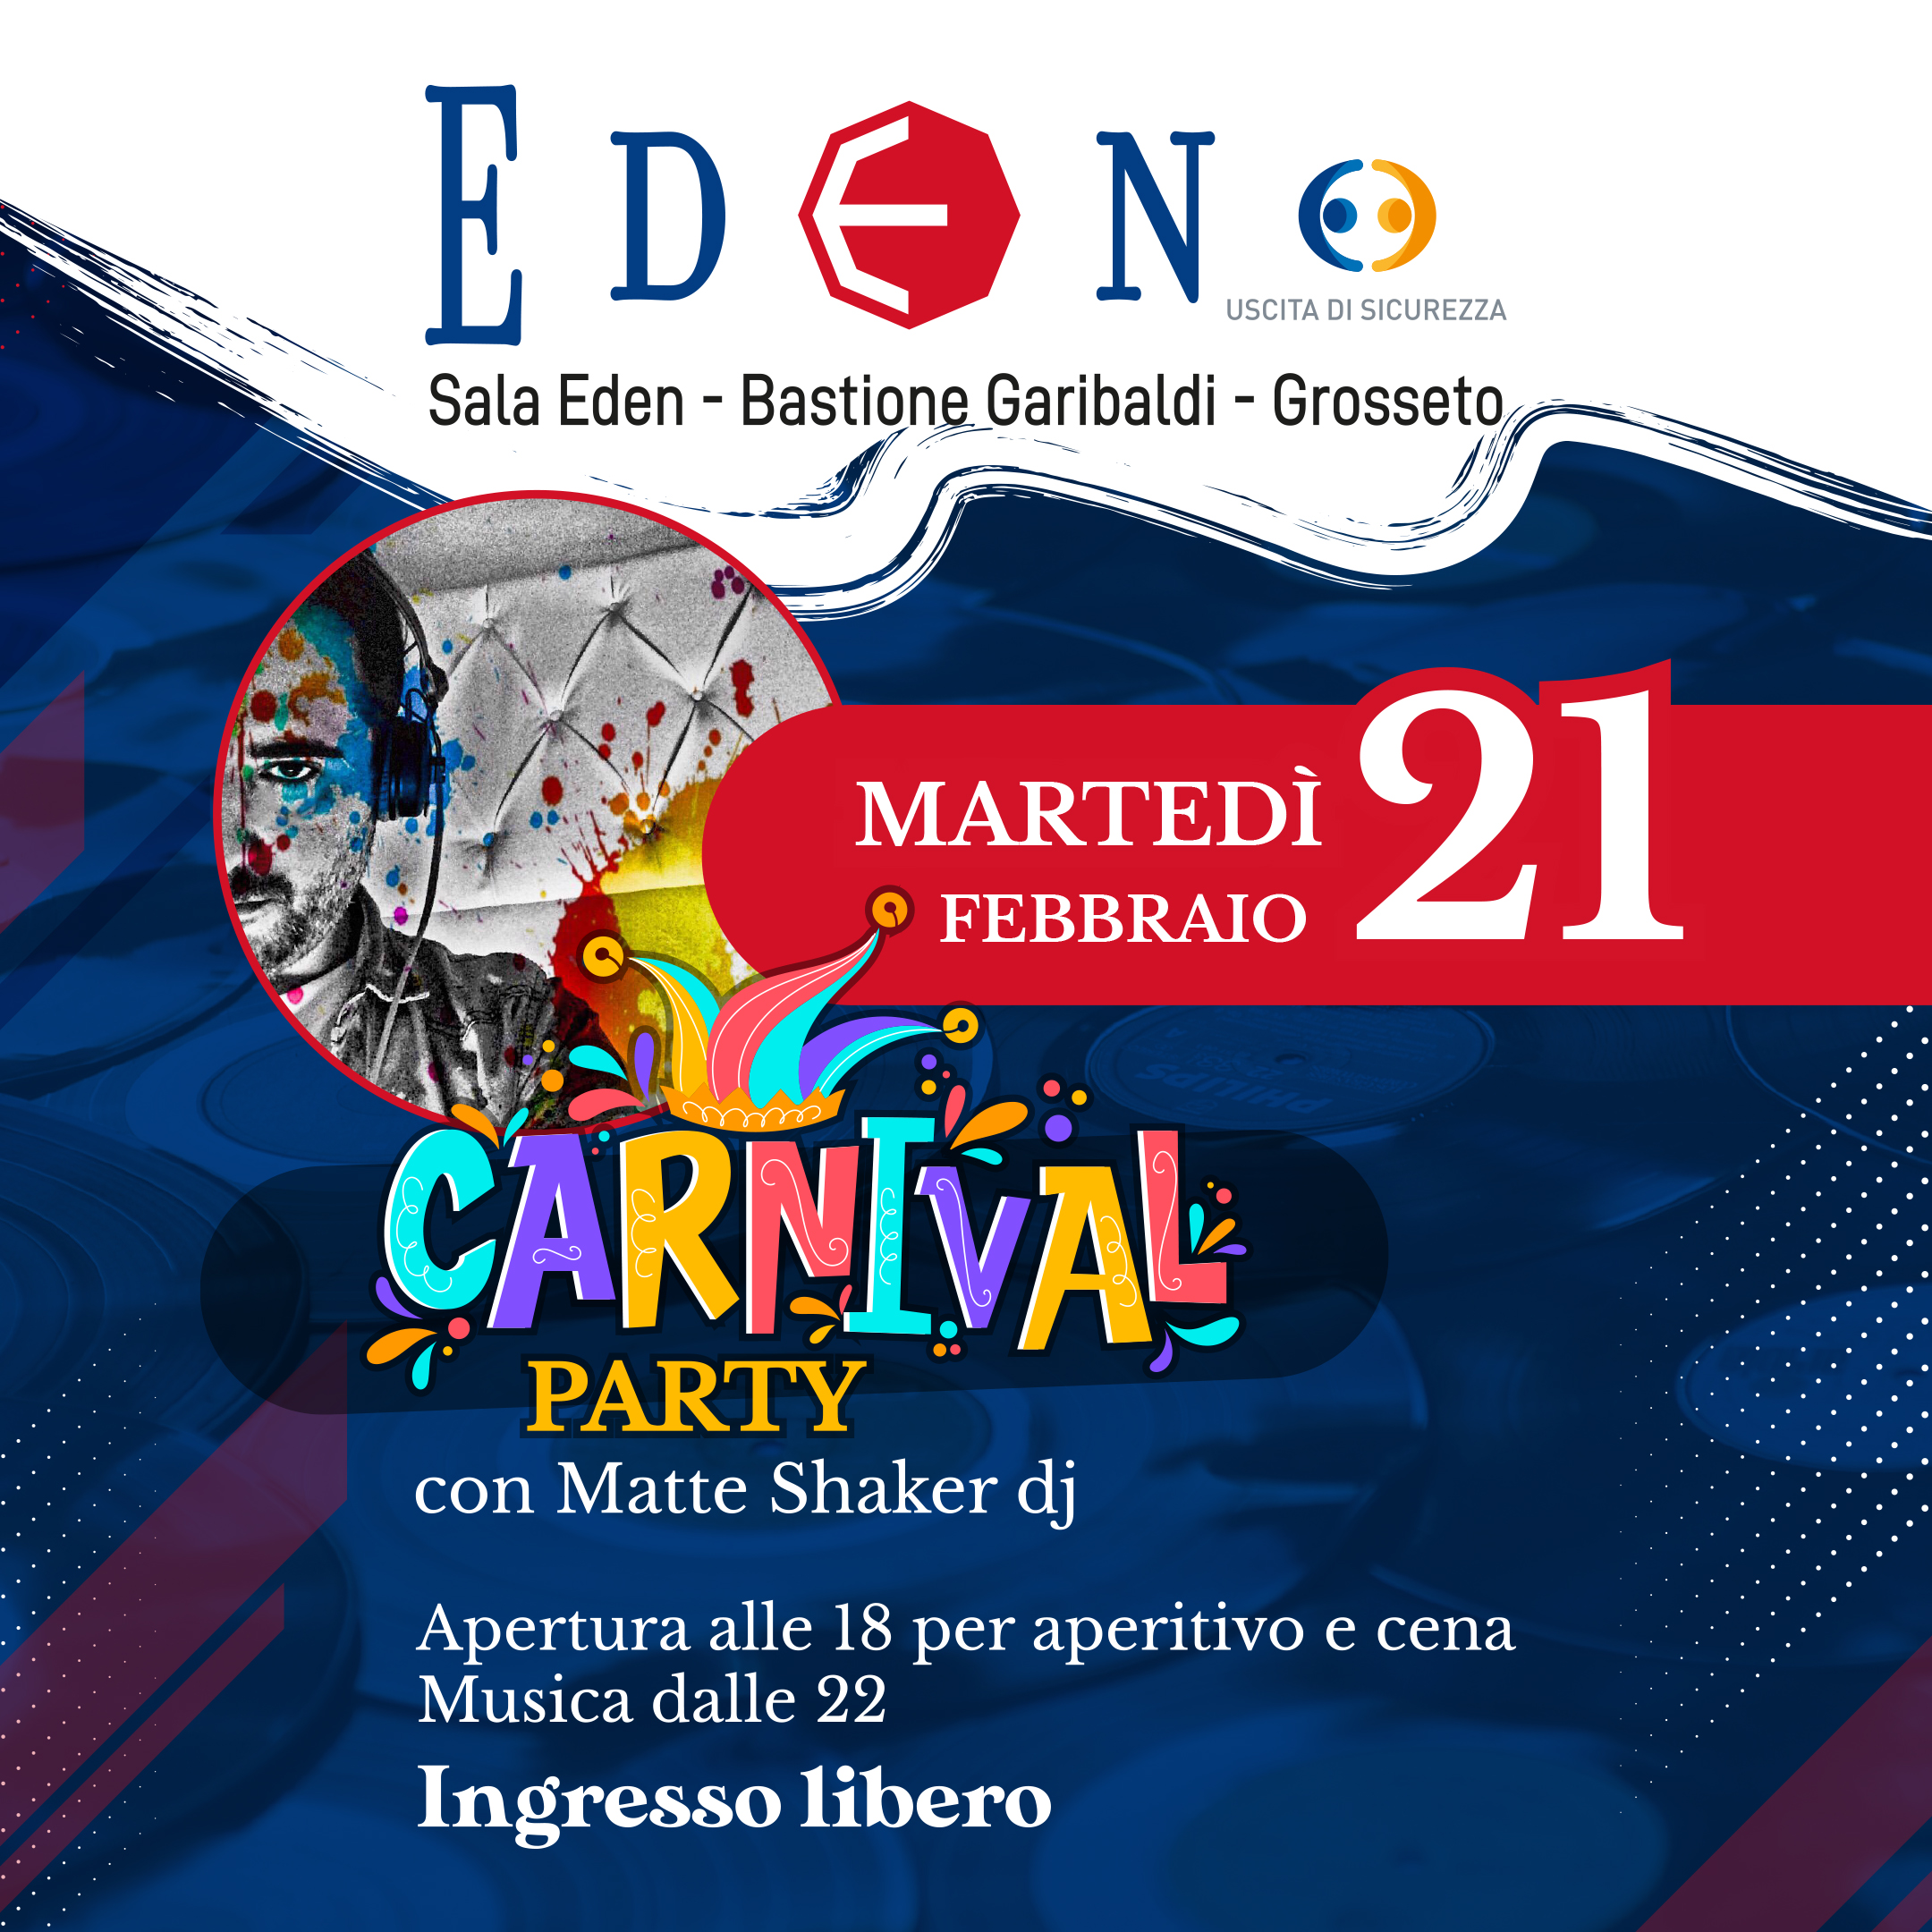 Arriva il “Carnival party” alla Sala Eden